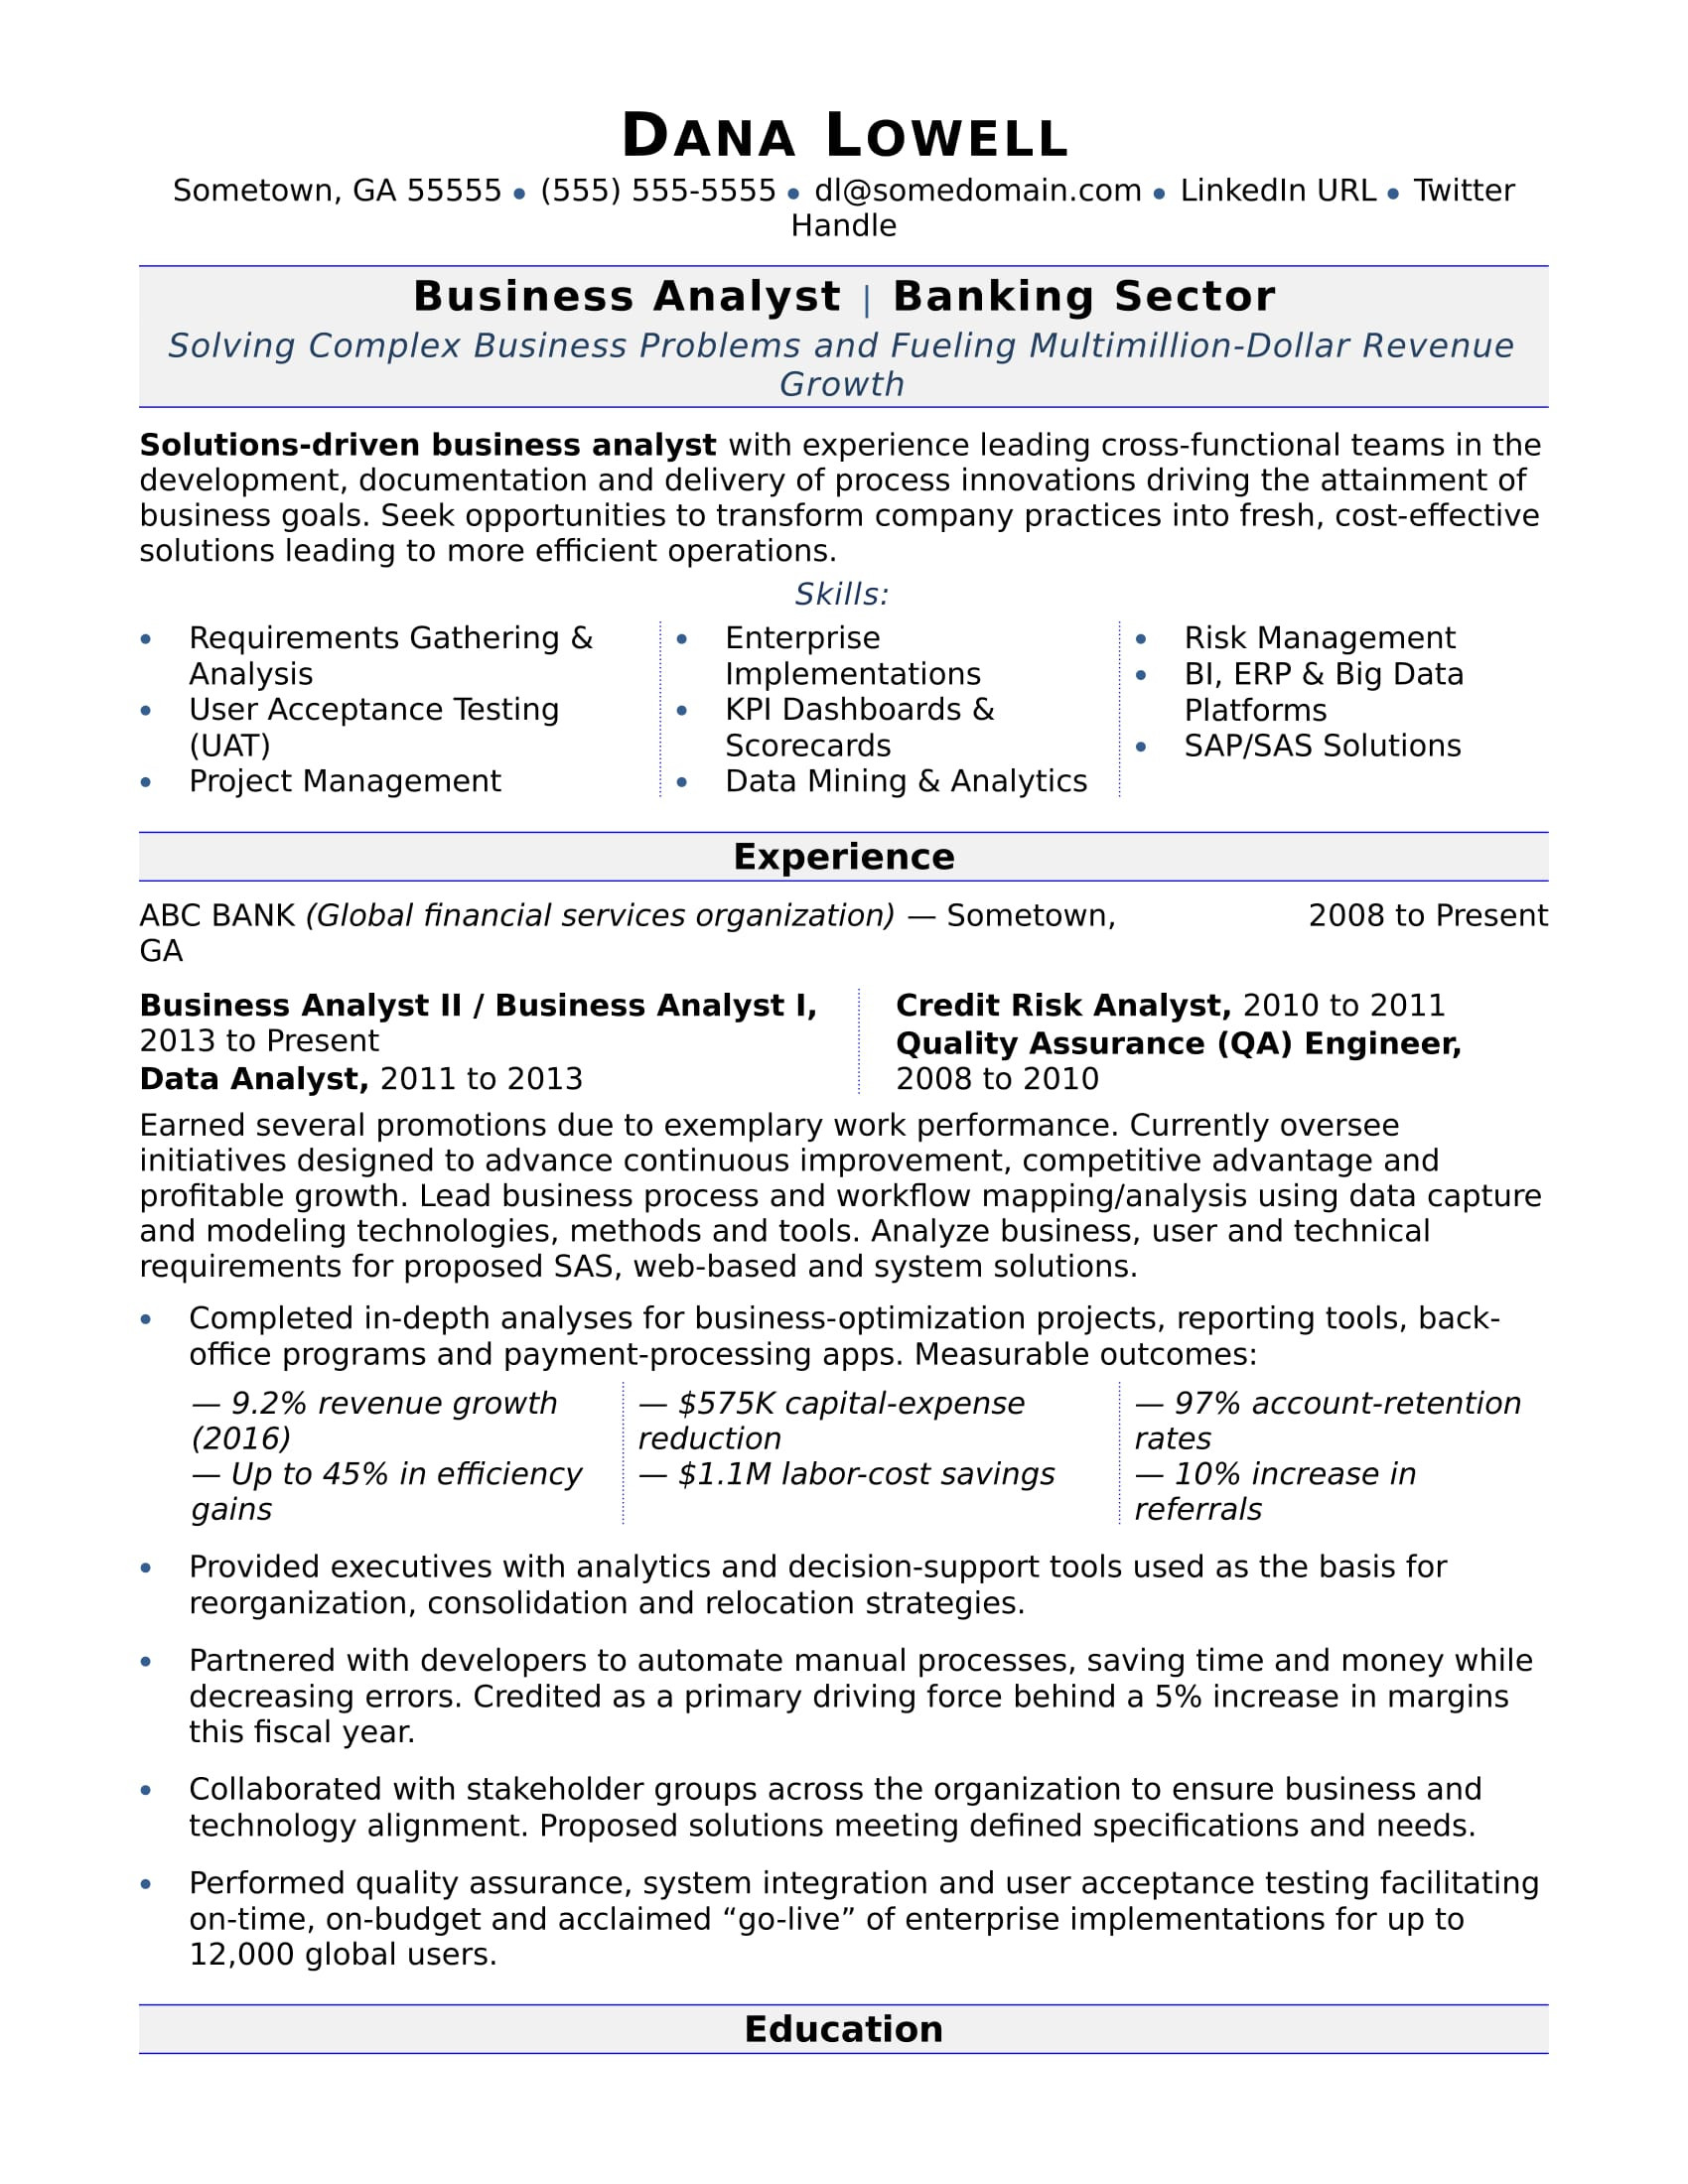 Entry Level Risk Analyst Resume Sample Business Analyst Resume Monster.com